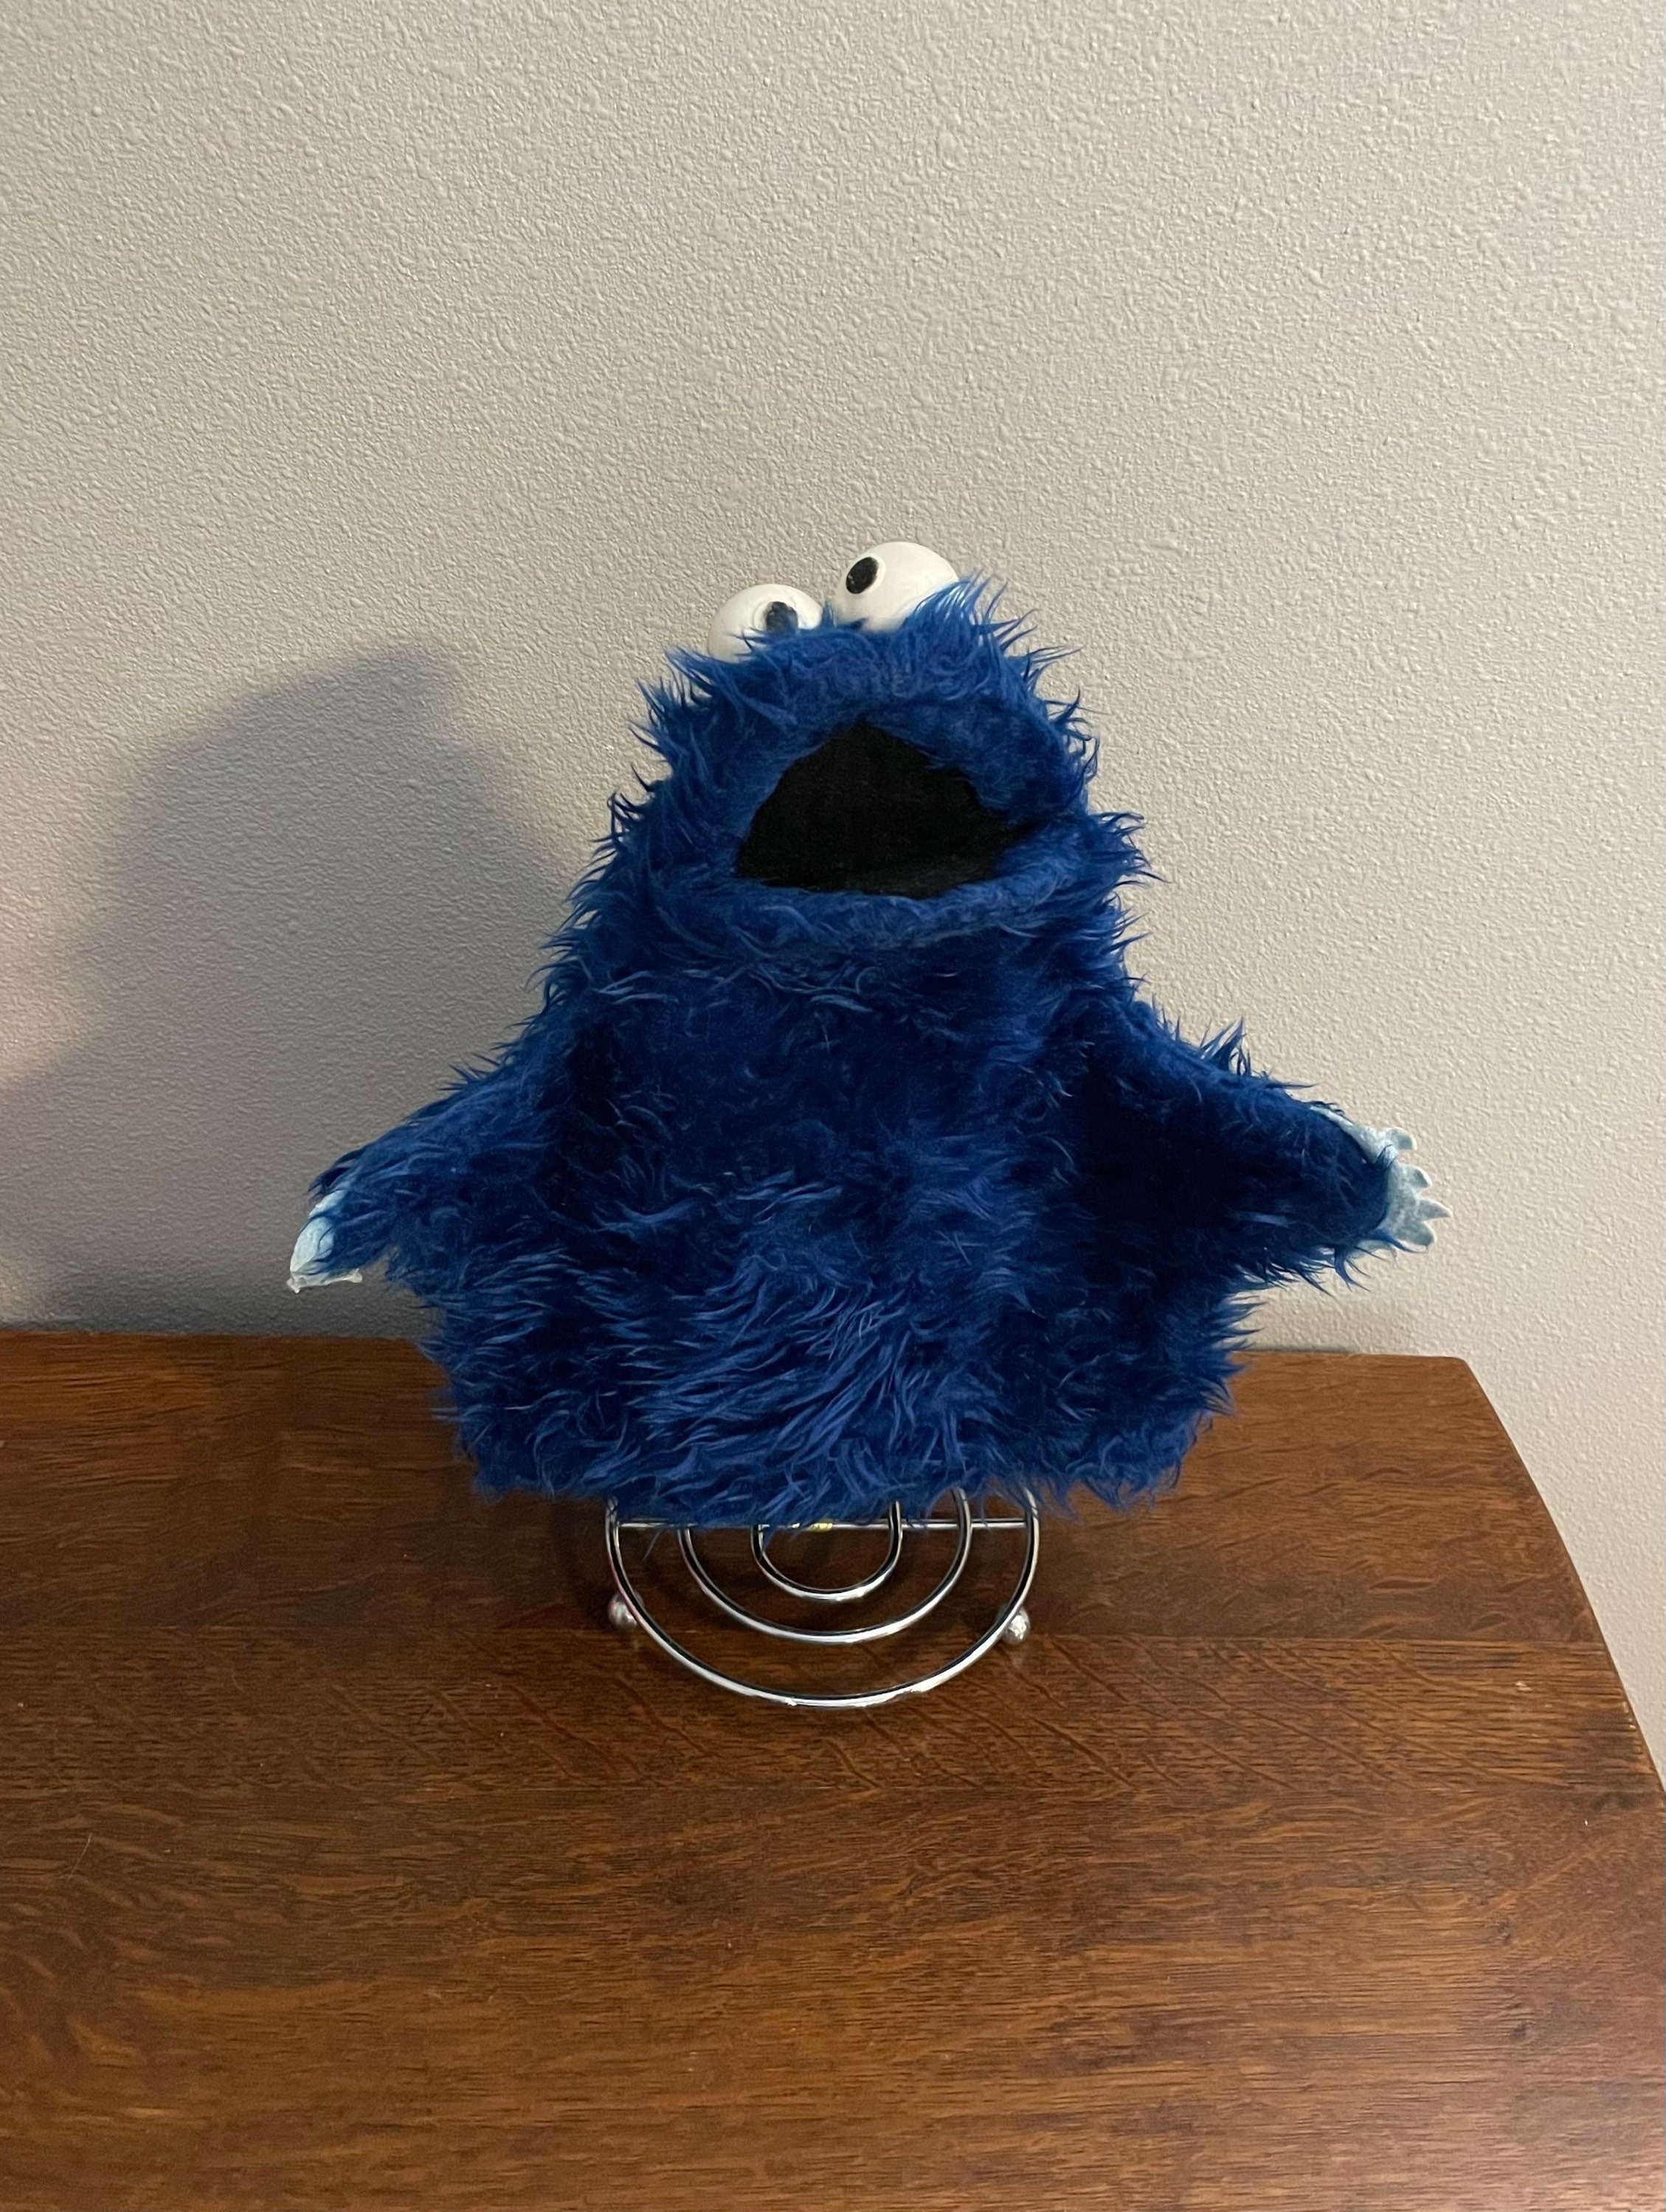 VTG Sesame Street Cookie Monster Puppet